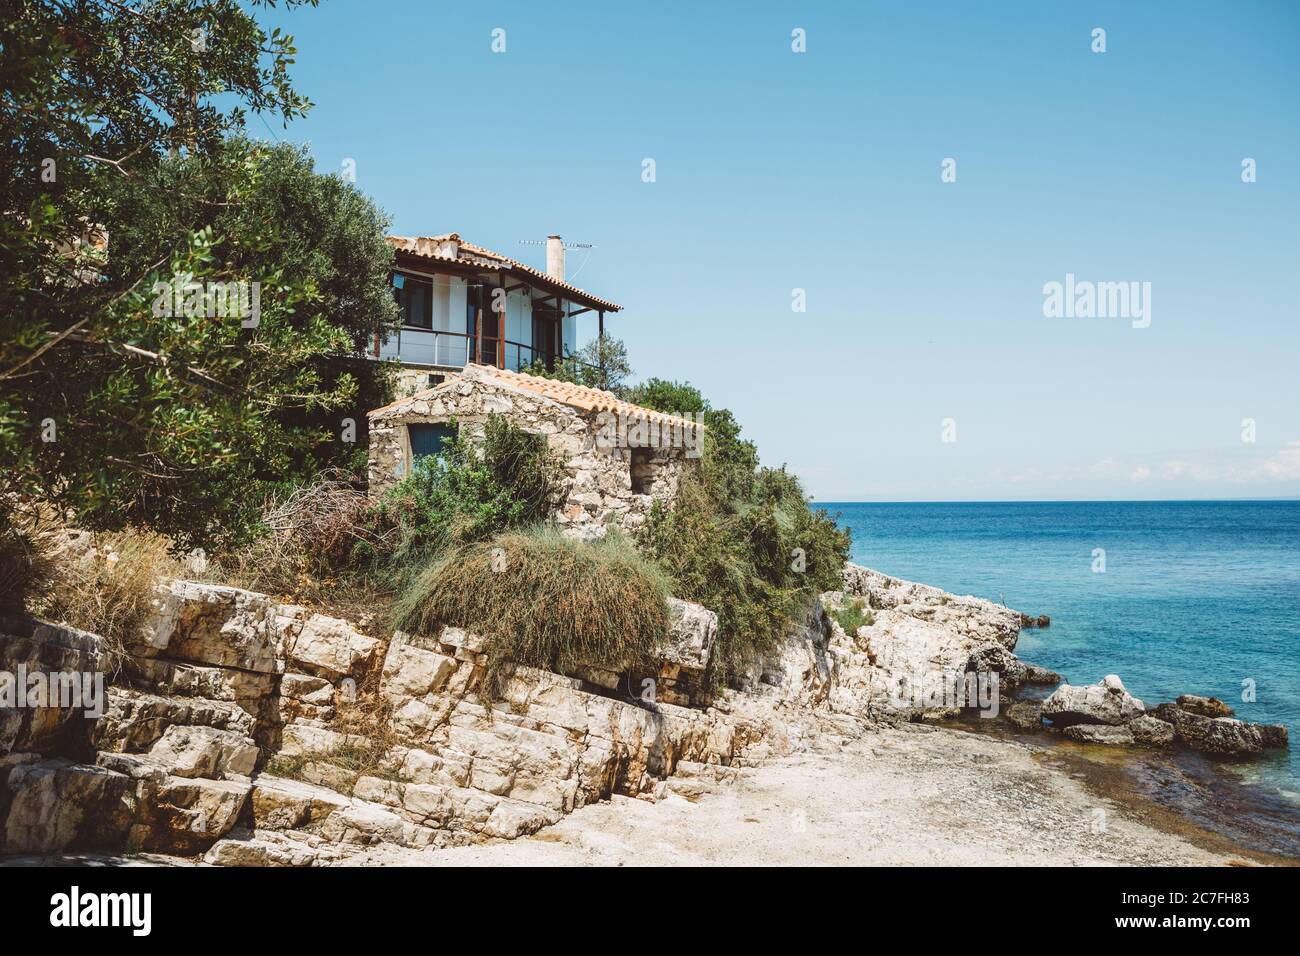 Maison côtière avec vue sur la mer Ionienne bleue et ciel bleu clair sur l'île grecque de Zakynthos pendant la journée ensoleillée d'été Banque D'Images